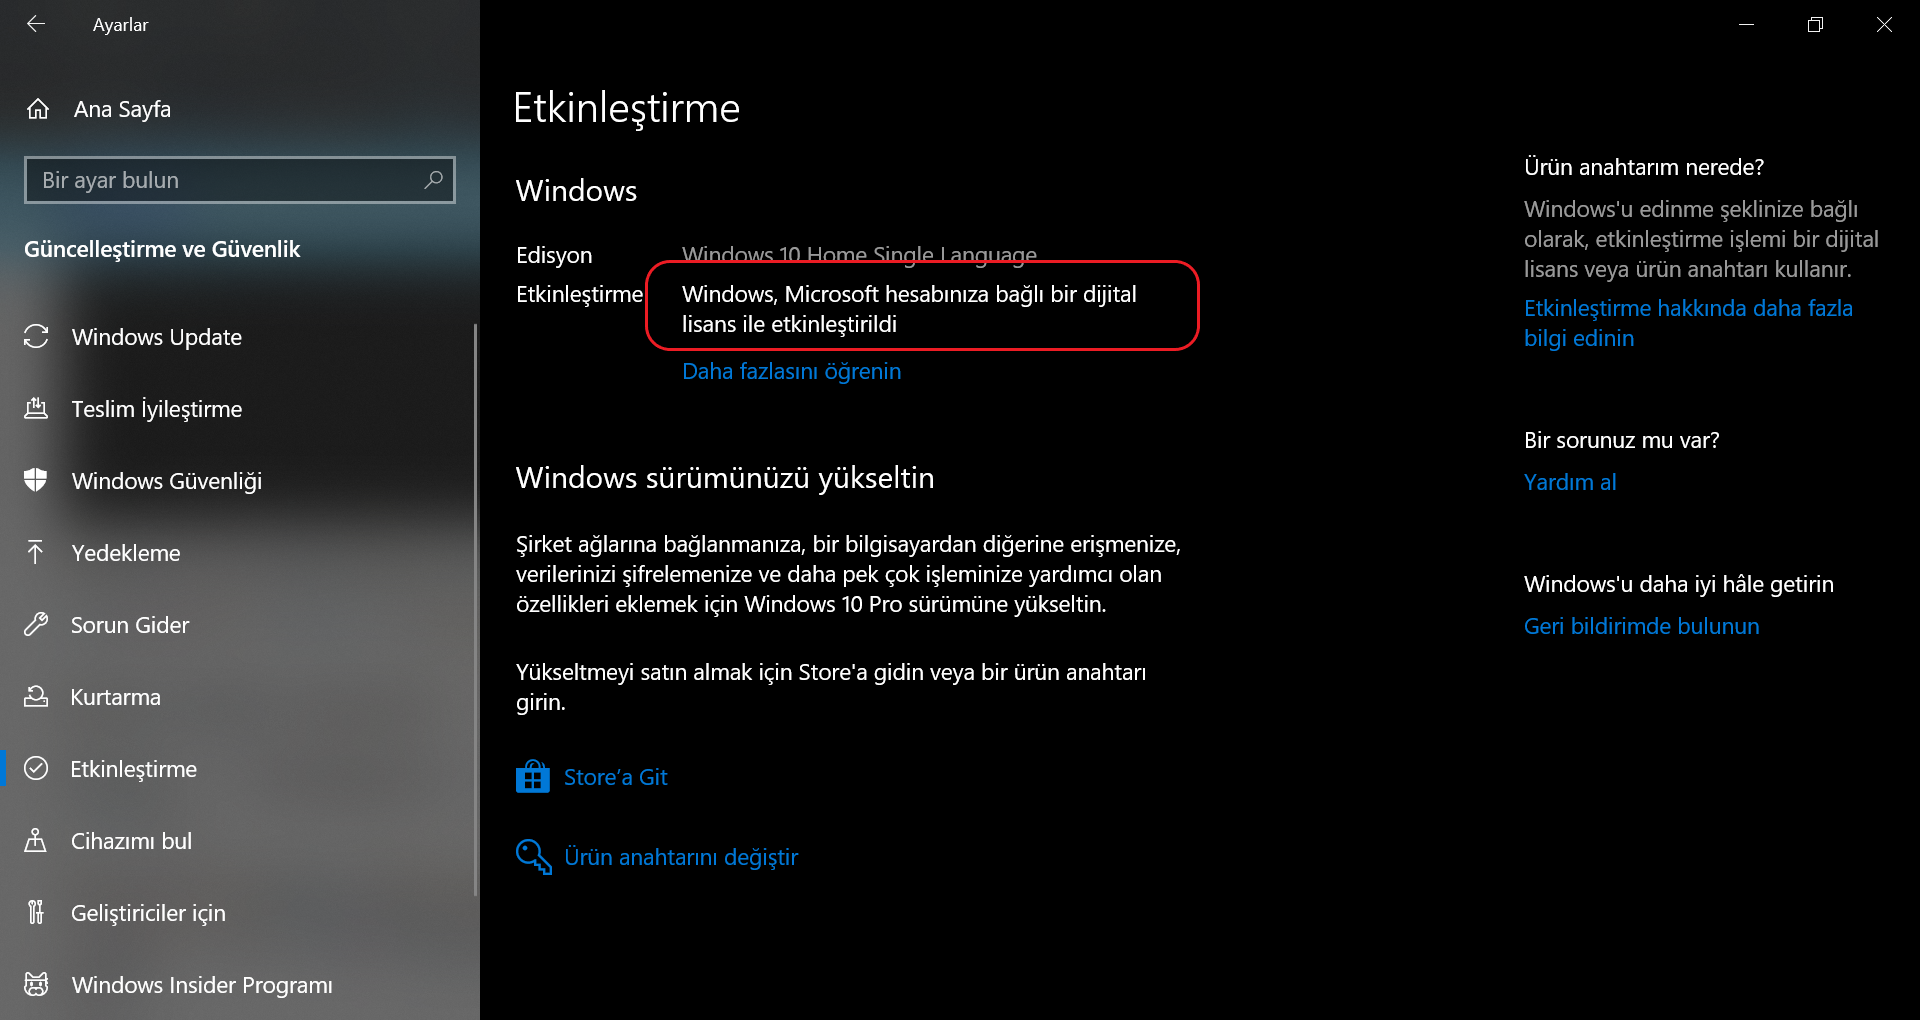 Windows Anahtarının etkinleştirilmiş görüntüsü